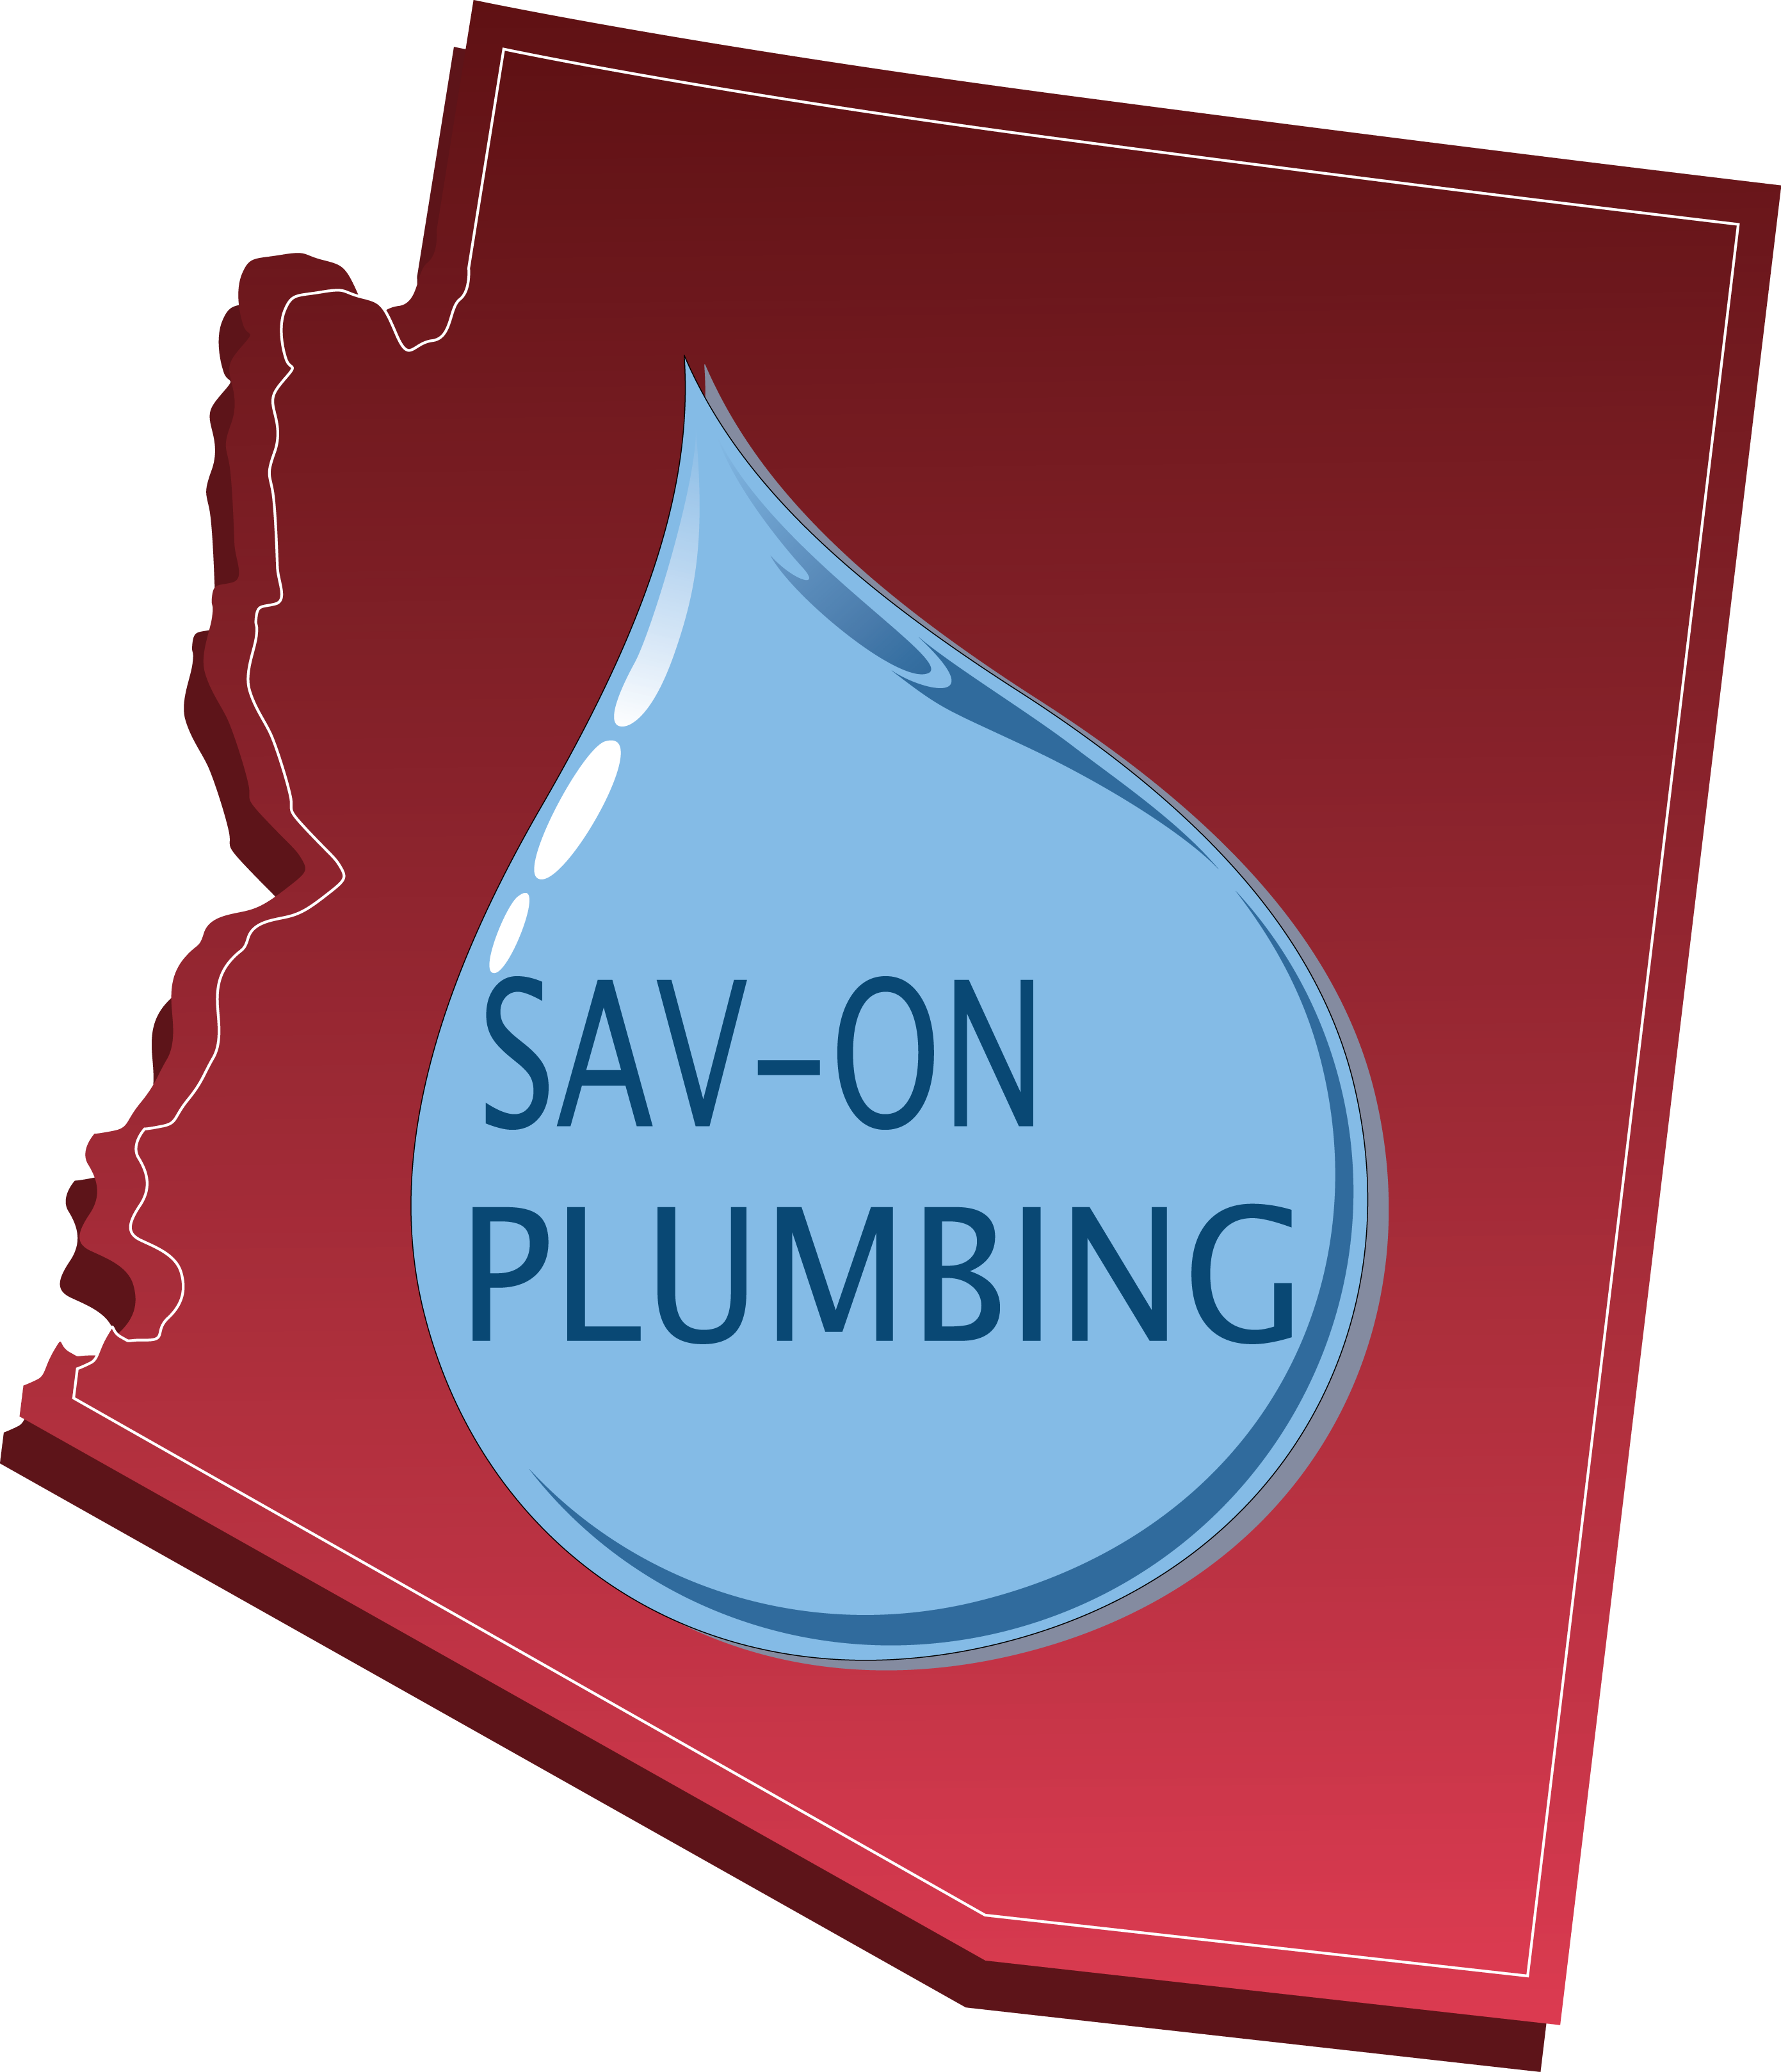 Sav-On Plumbing – Glendale, AZ Plumbing and Water Heater Service